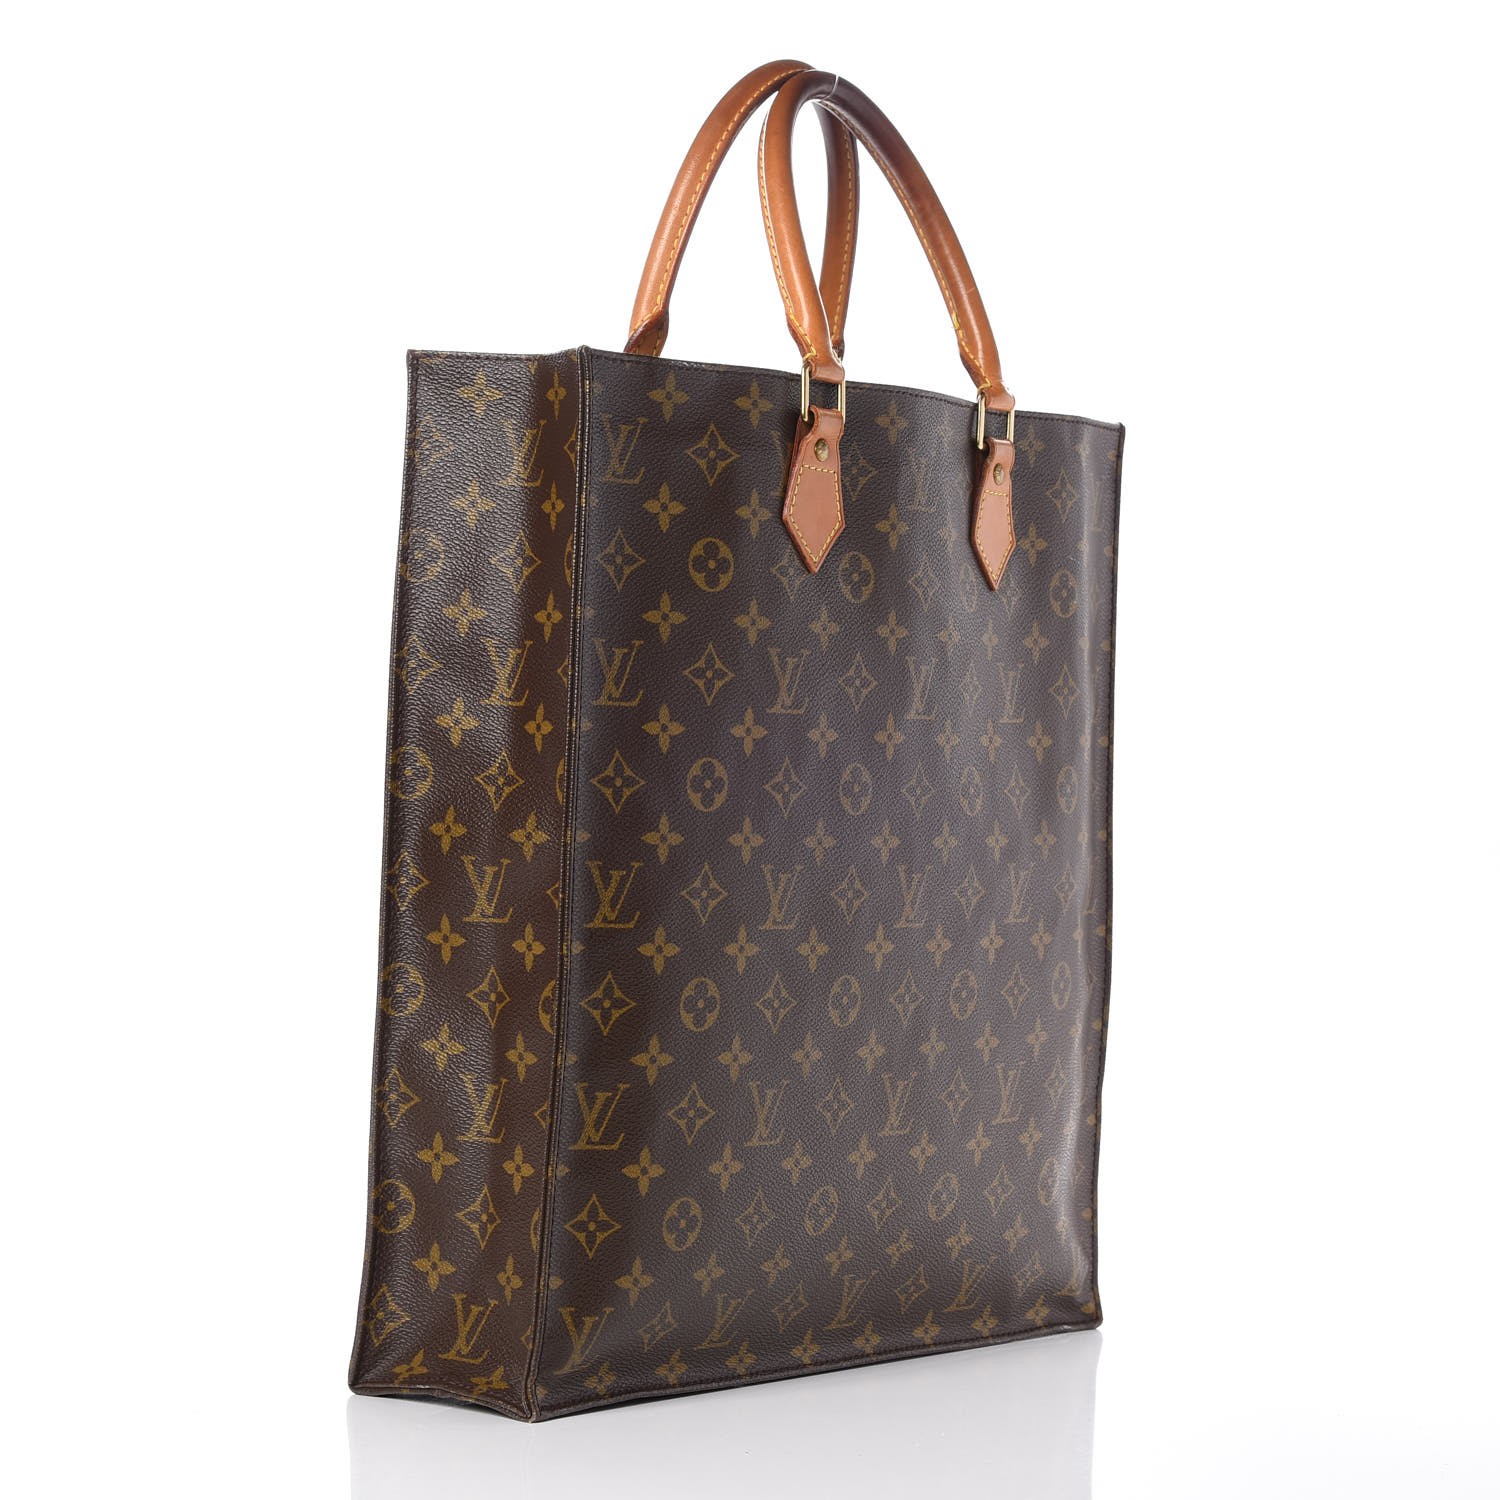 Bag Organizer for Louis Vuitton Sac Plat Regular Size - Zoomoni